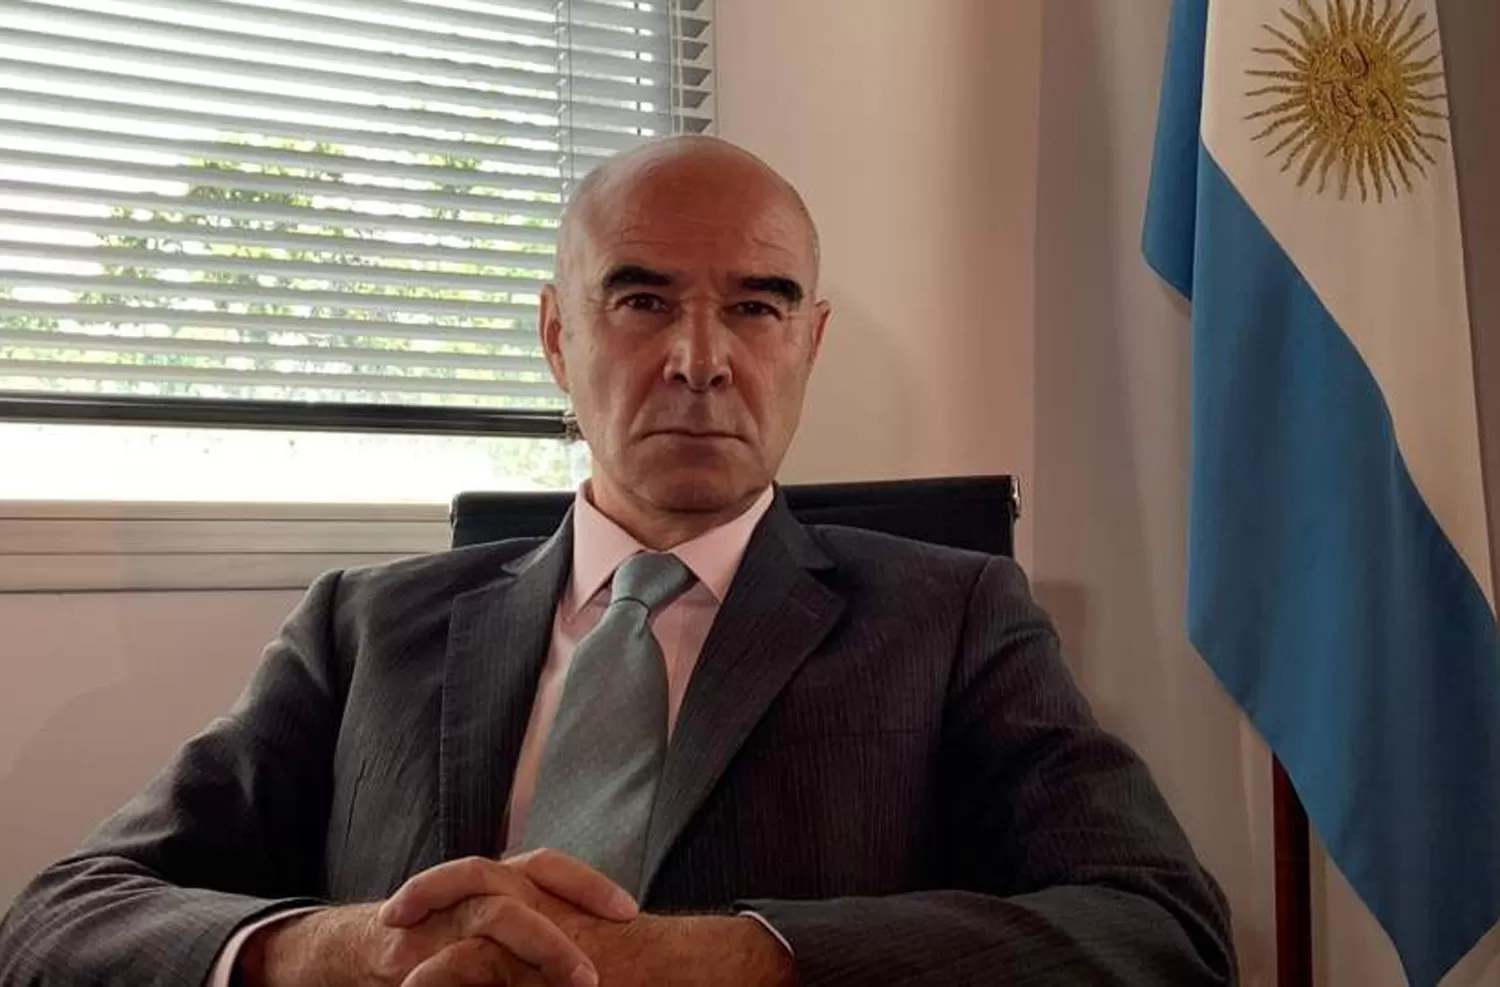 El candidato a gobernador de Gómez Centurión pidió que voten por Macri